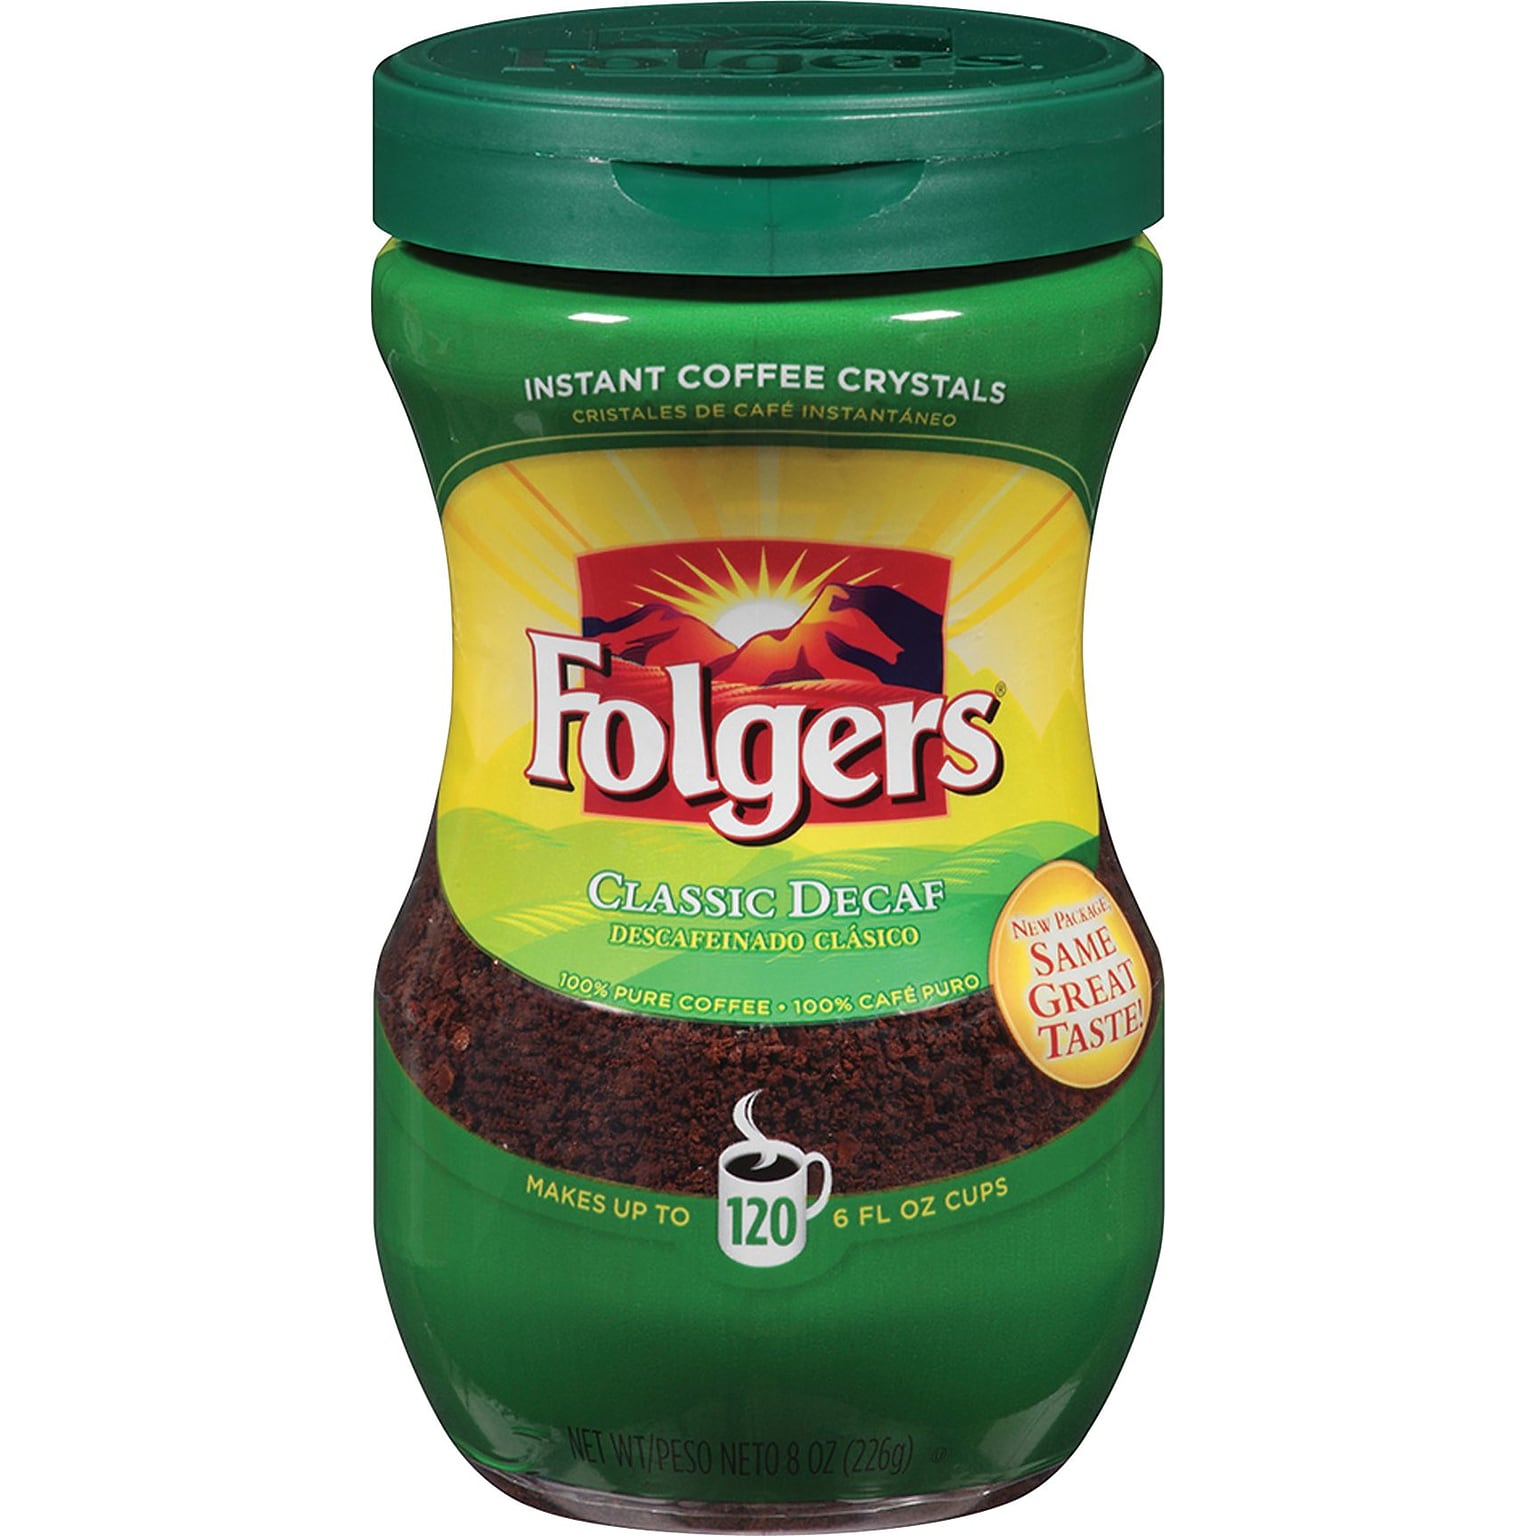 Folgers® Classic Roast® Instant Decaf Coffee, 8 oz. Jar